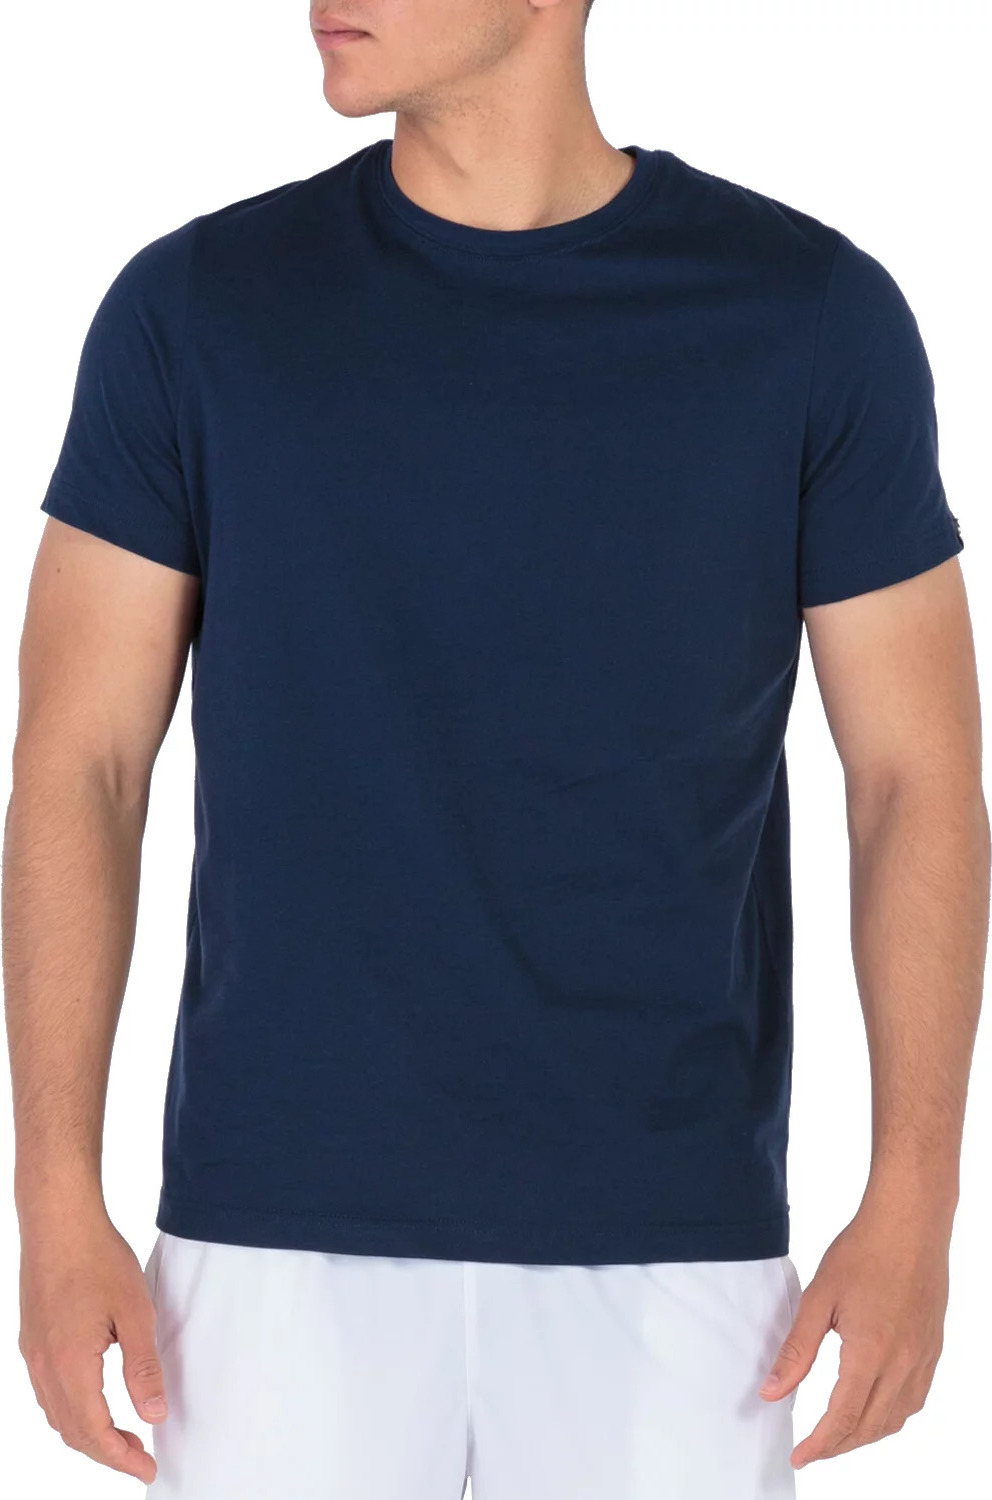 Tmavě modré pánské tričko Joma Desert Tee 101739-331 Velikost: M